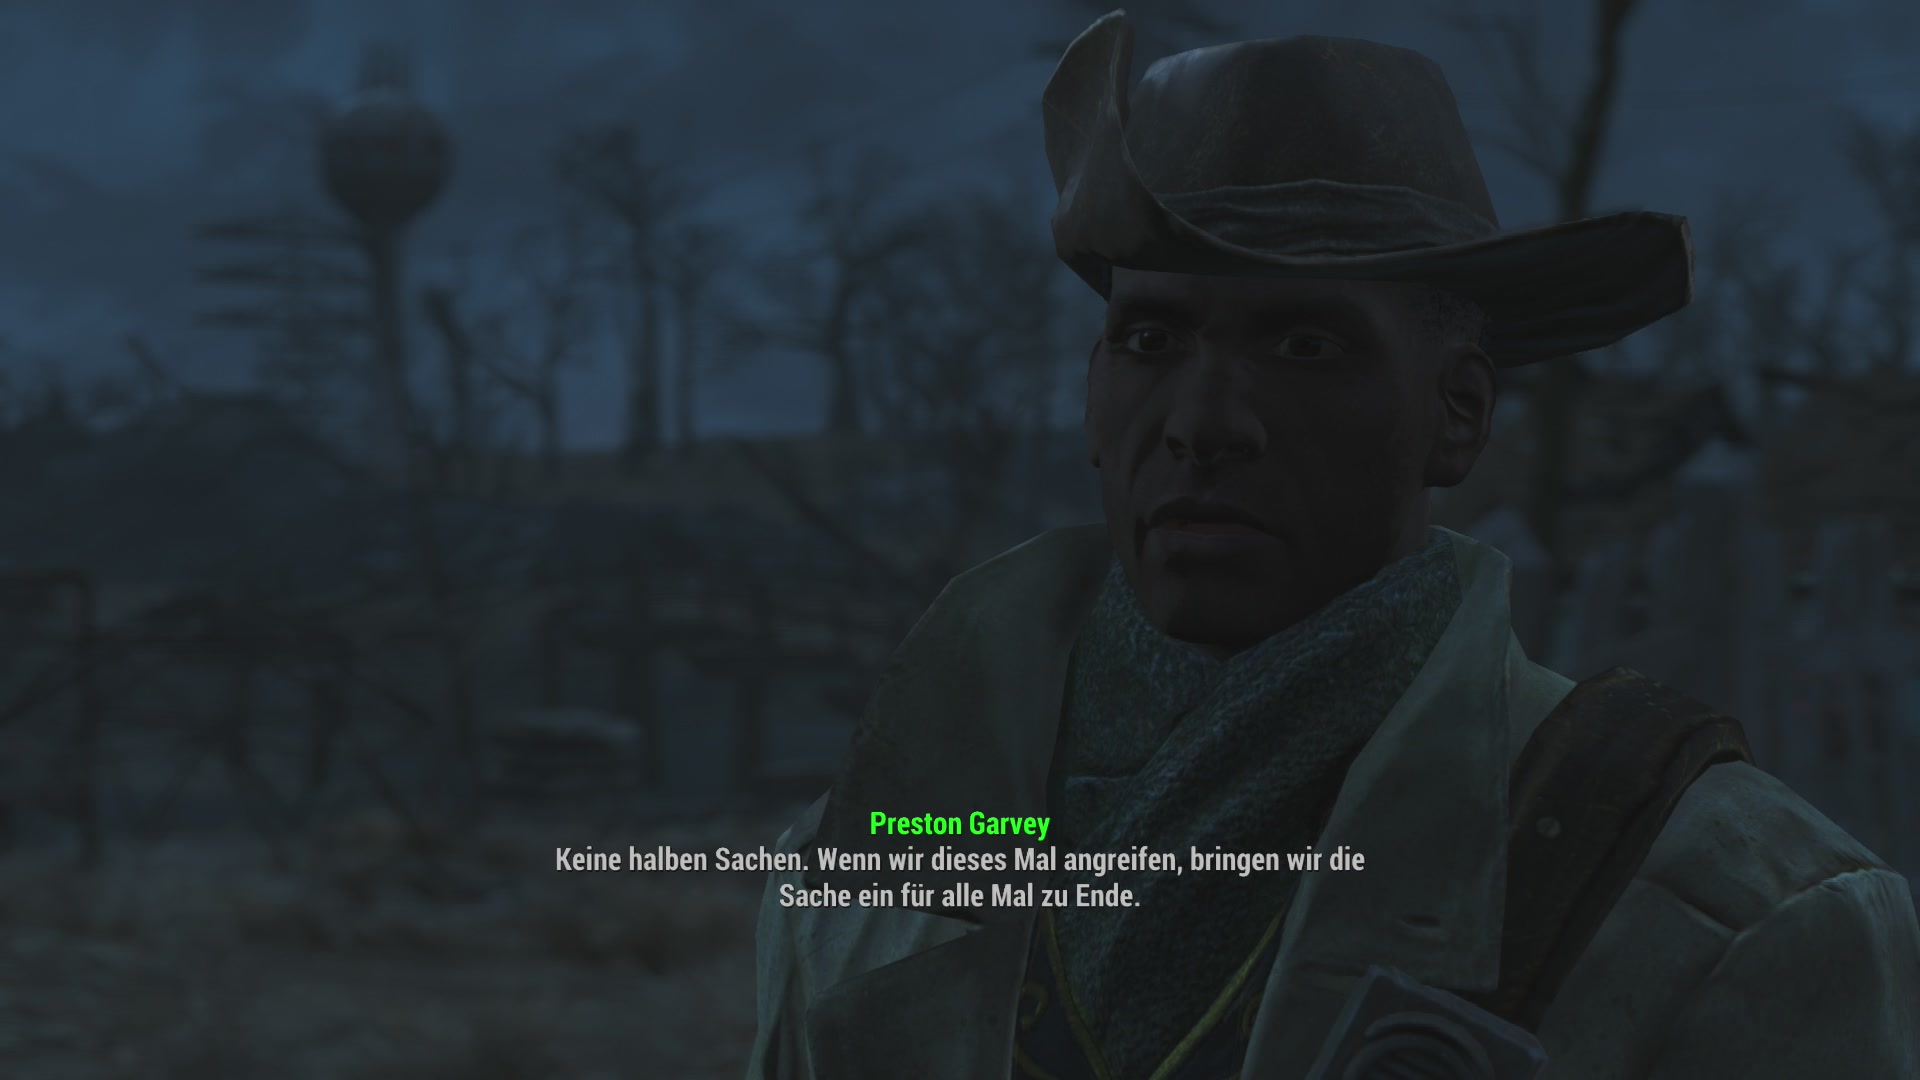 Fallout 4 престон гарви не разговаривает в сэнкчуари после конкорда фото 113